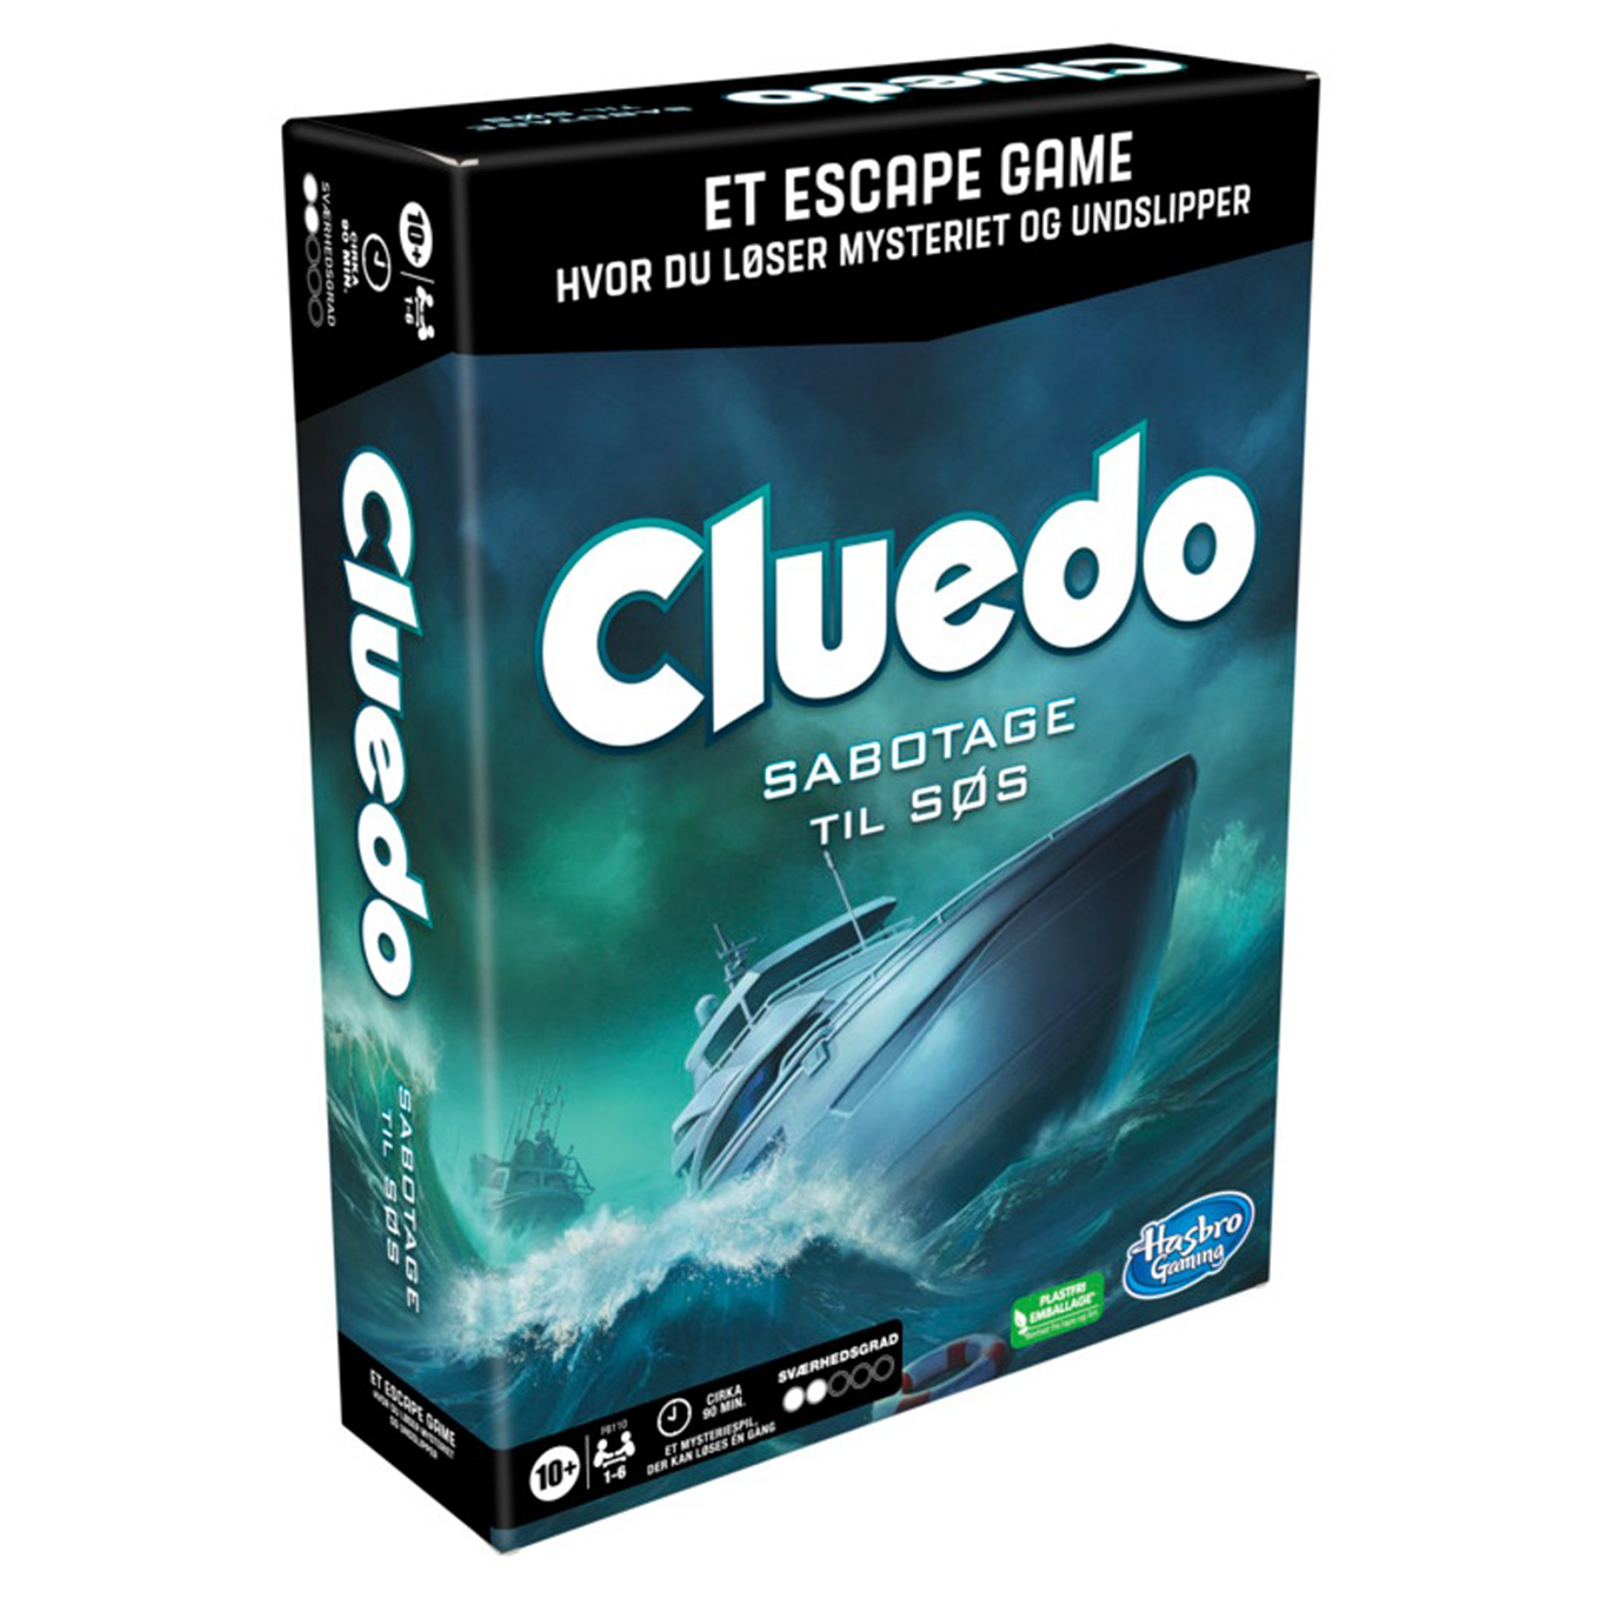 Se Cluedo Sabotage til søs hos Lad-os-Spille.dk